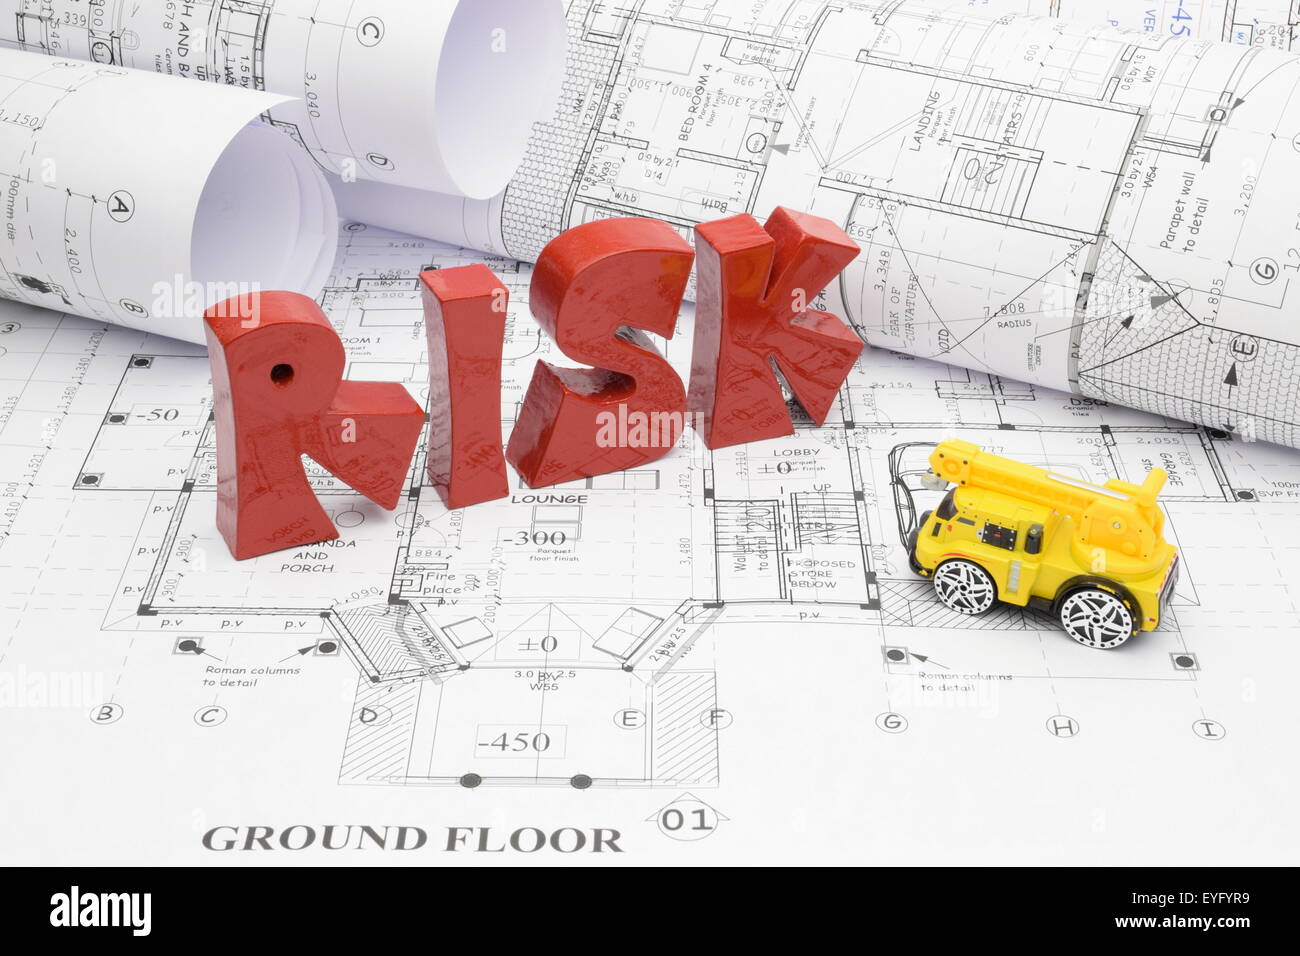 Blaupausen und Risiko in das Bauprojekt. Stockfoto